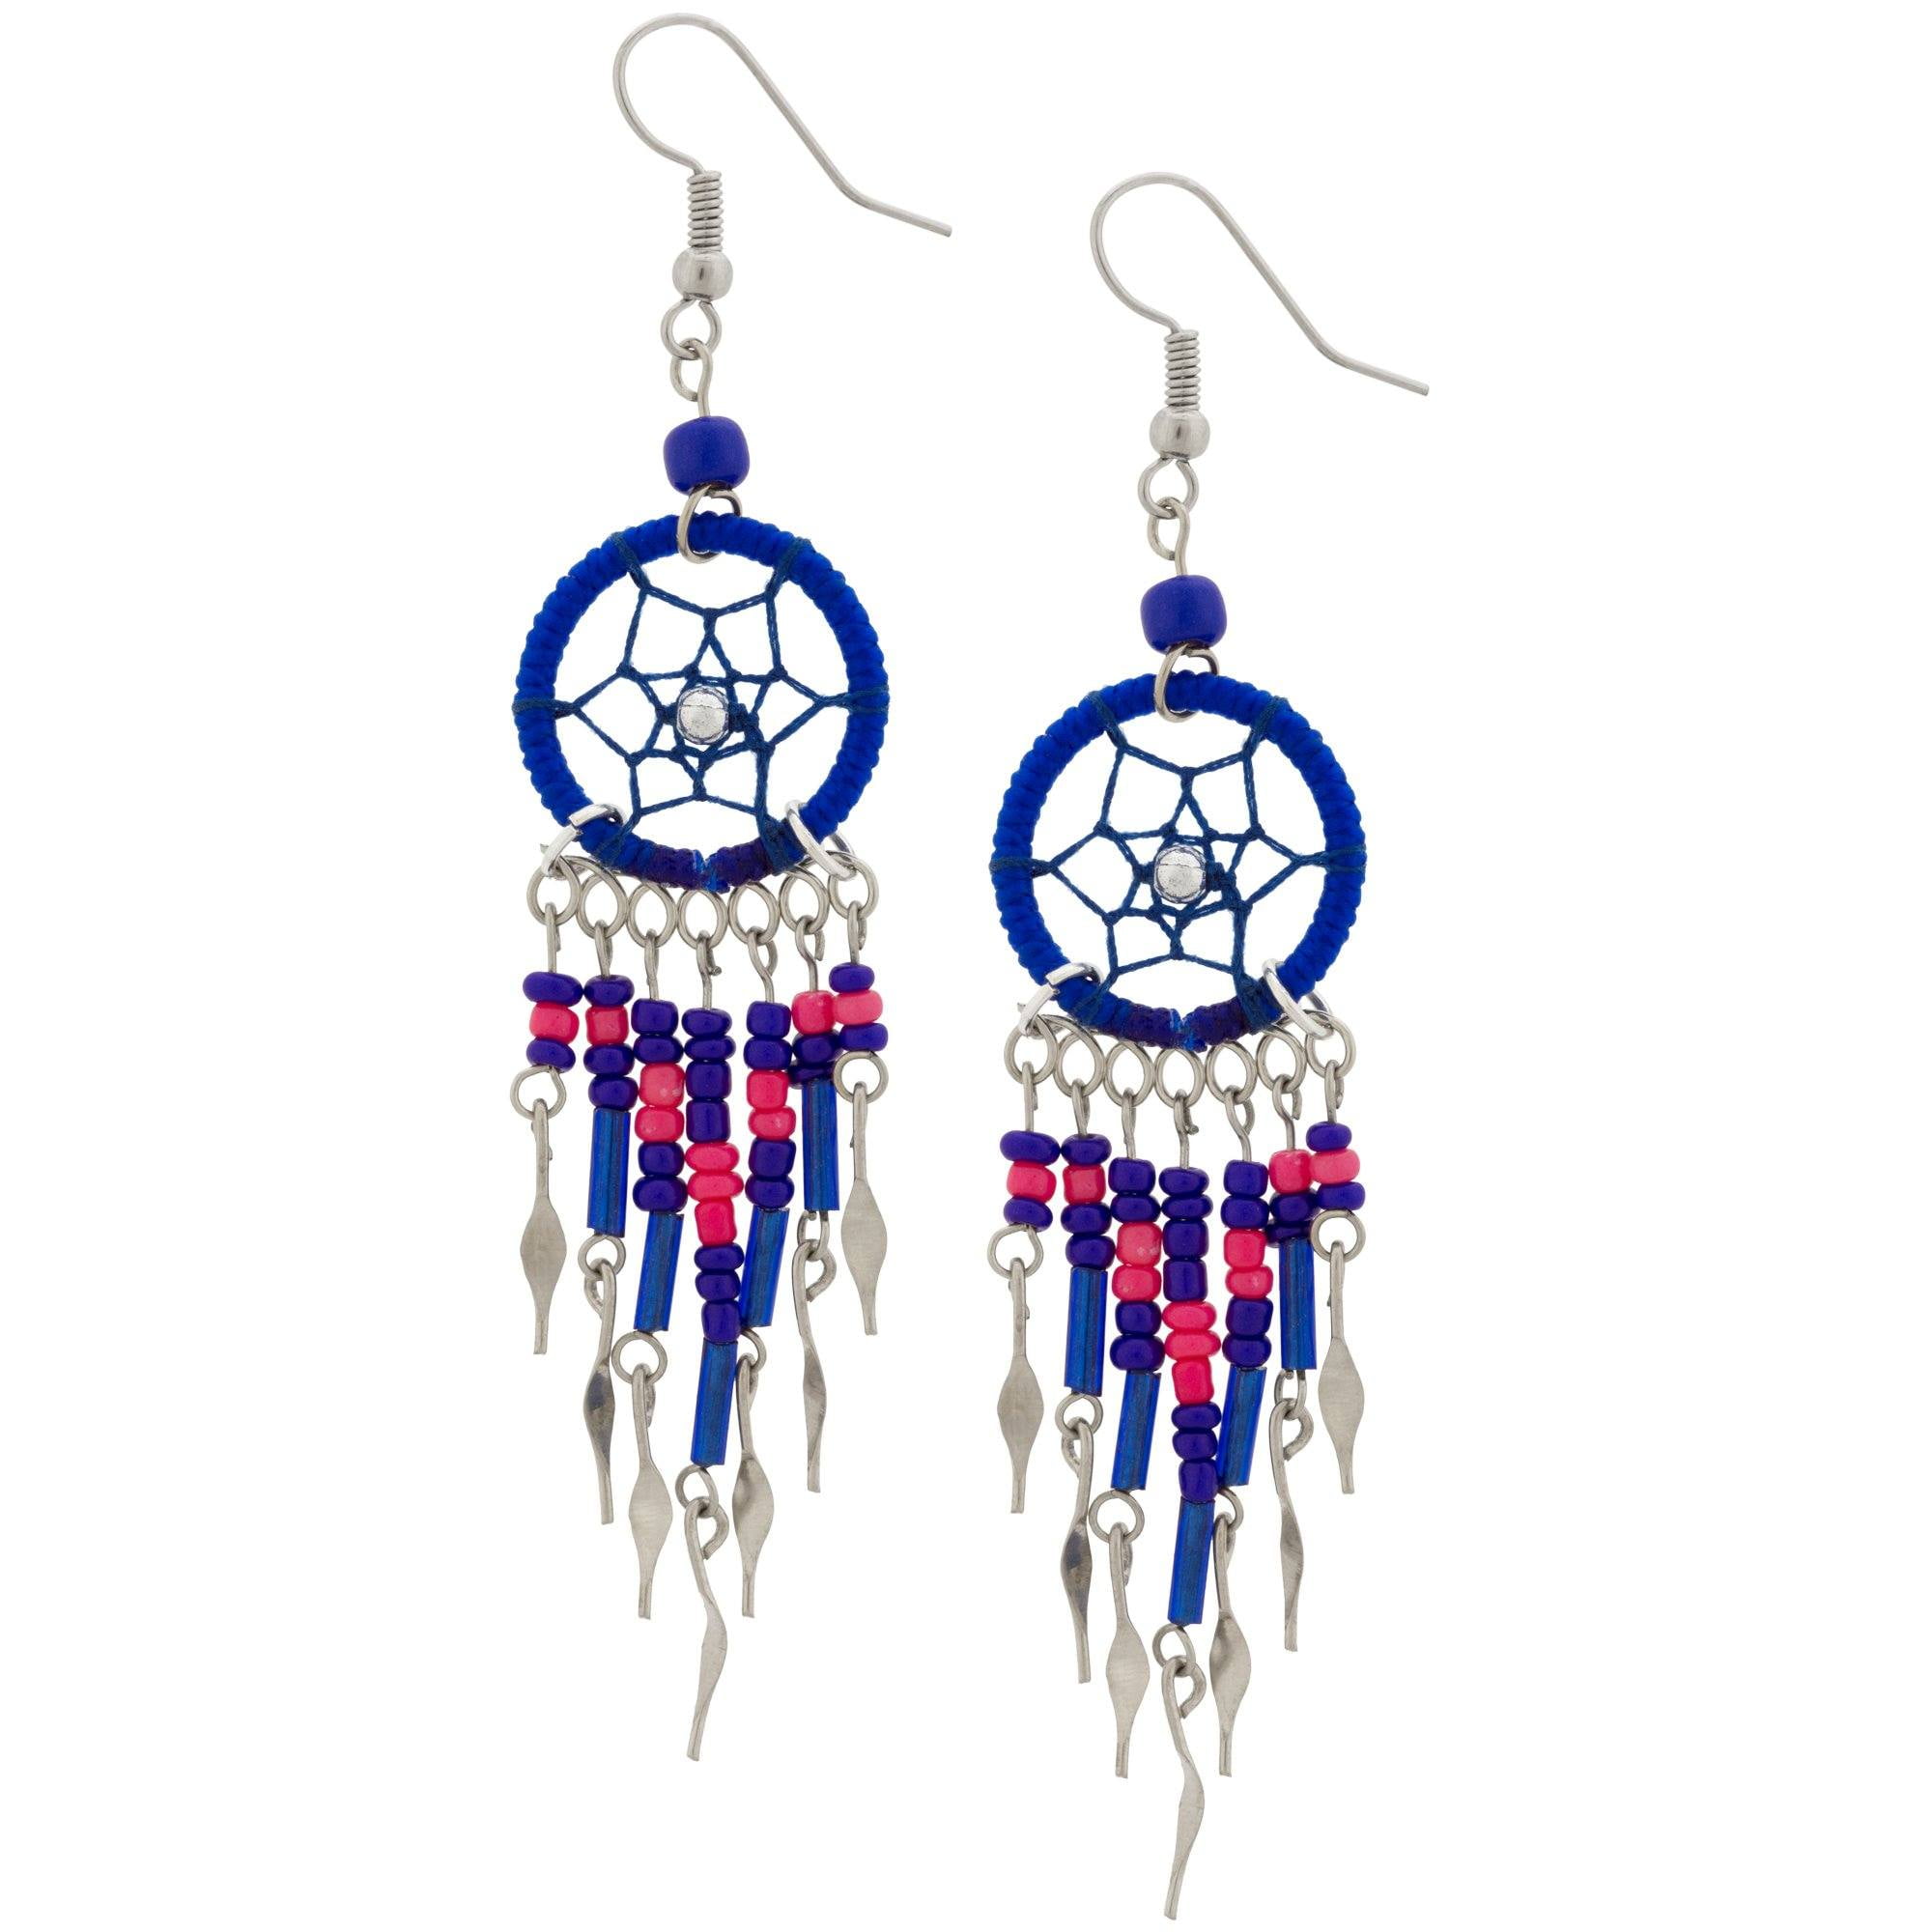 Transer- Dream Catcher Earrings 1-Pair Blue Handmade Traditional Drop Dangle Earrings Gift for Mother Girl Friend 